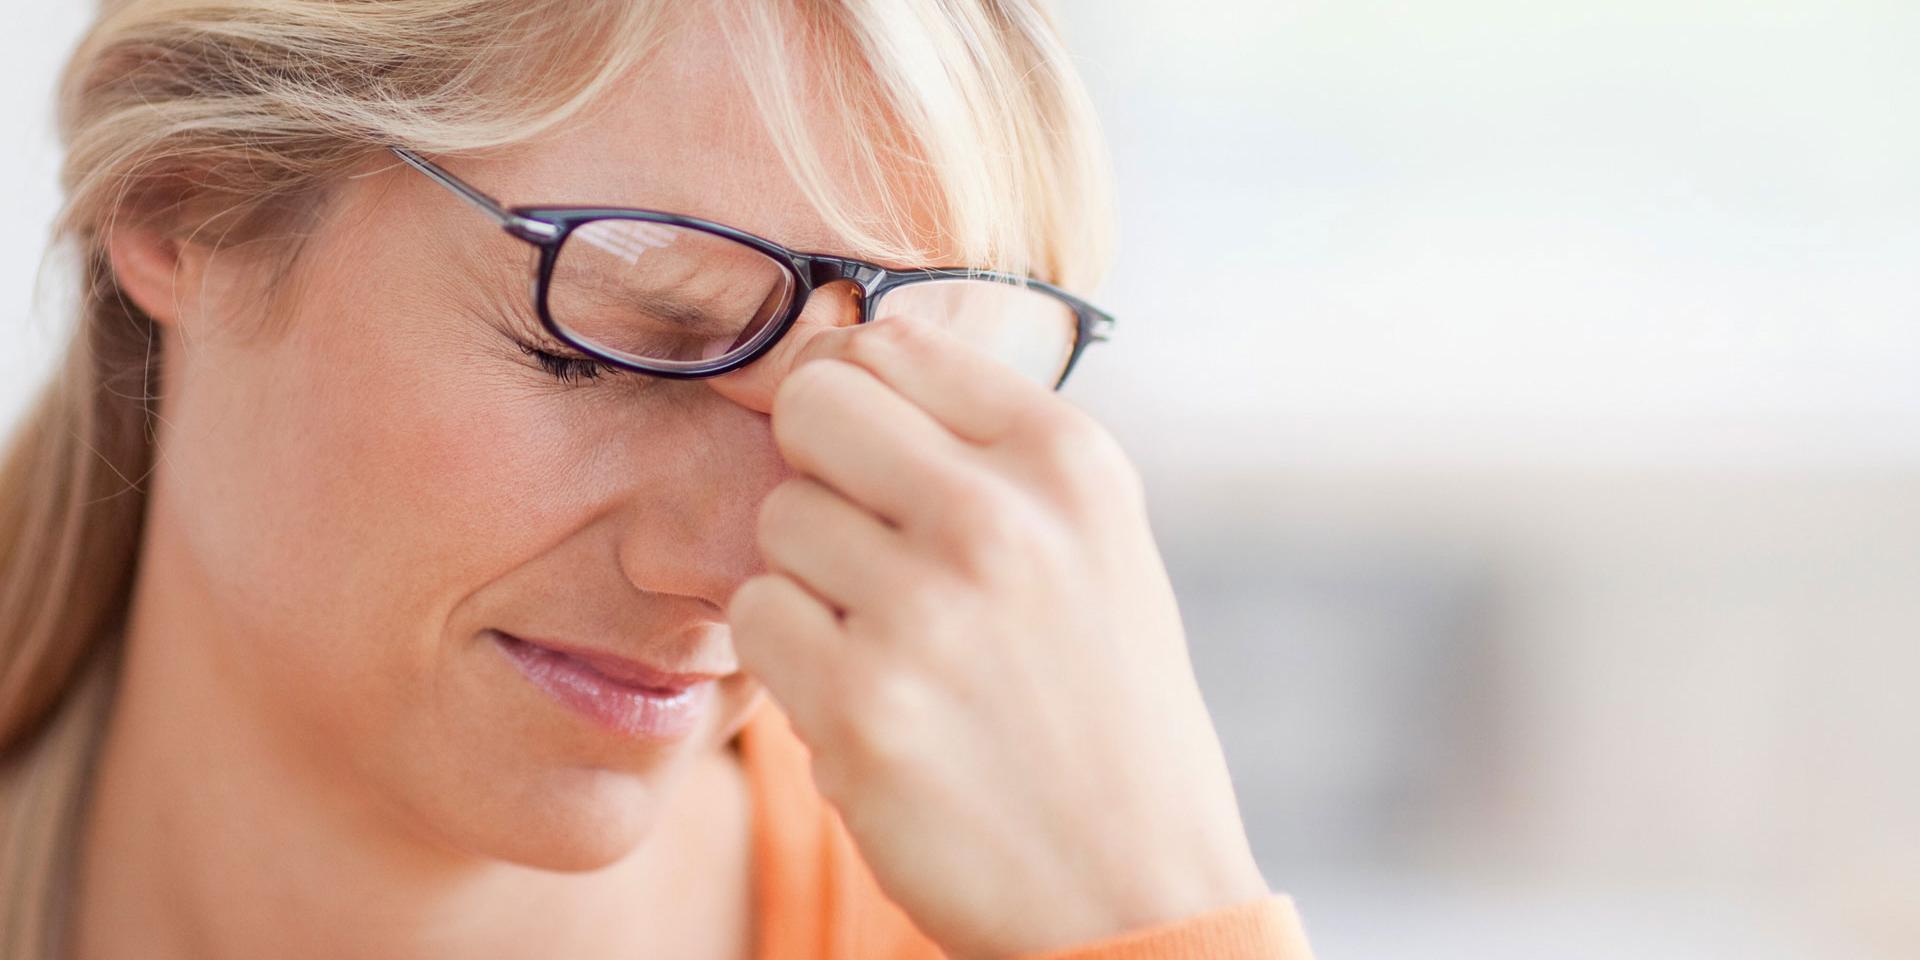 Kan fel sorts glasögon eller dåligt ljus skada ögonen?